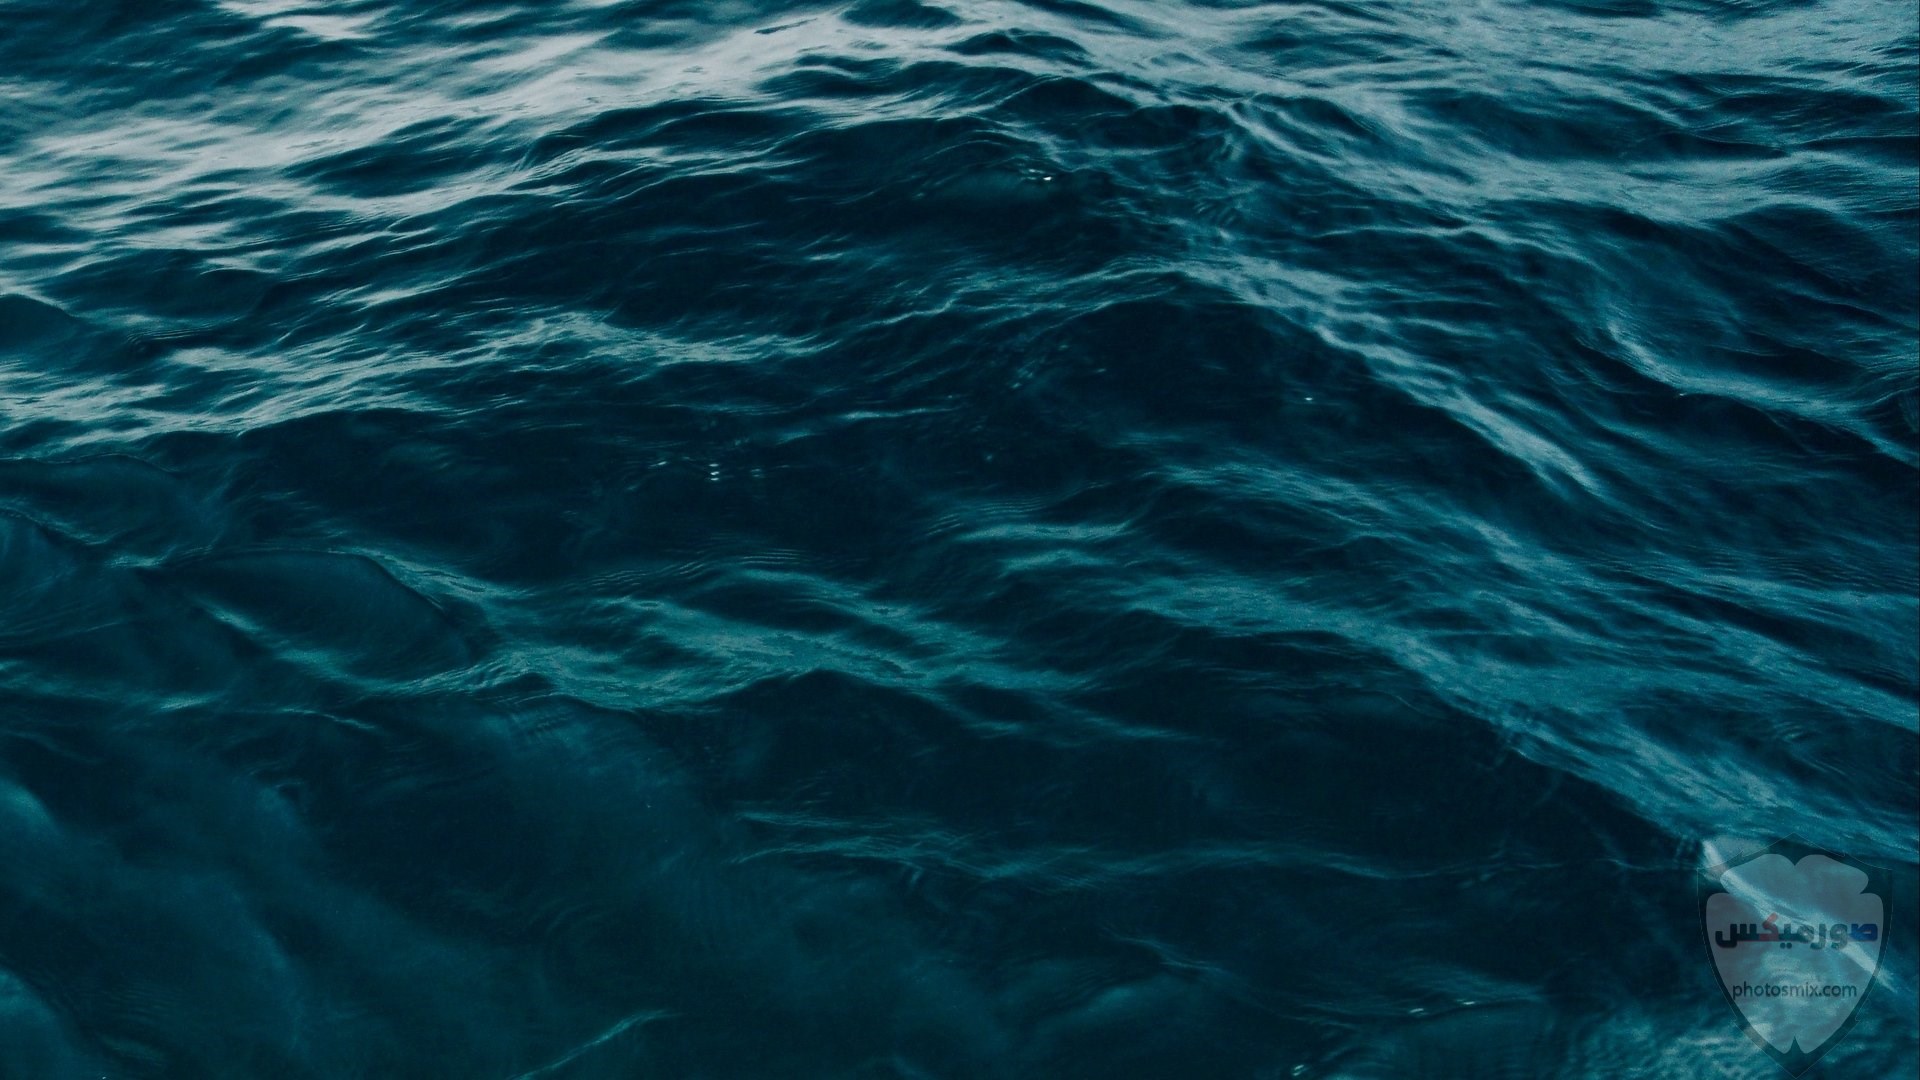 صور البحر 2020 خلفيات بحر وسفن للفوتوشوب 6